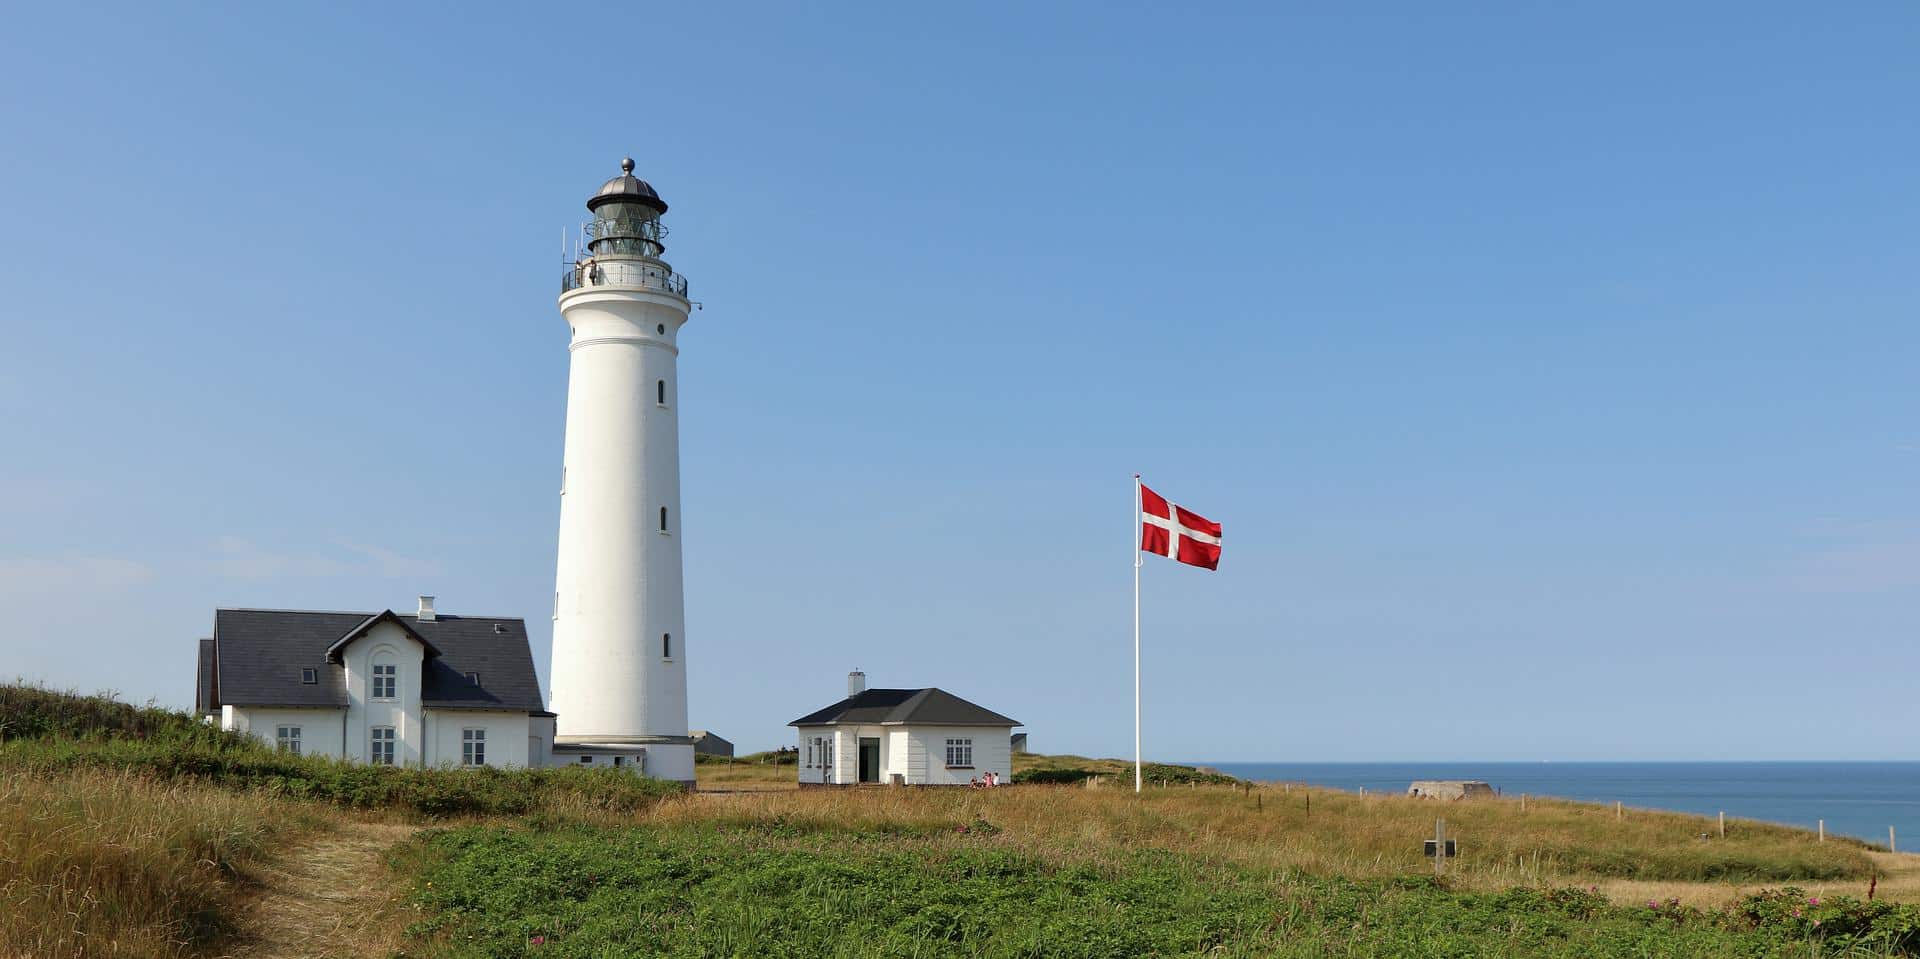 Danska: 6 razloga da otputujete u najmanju nordijsku zemlju